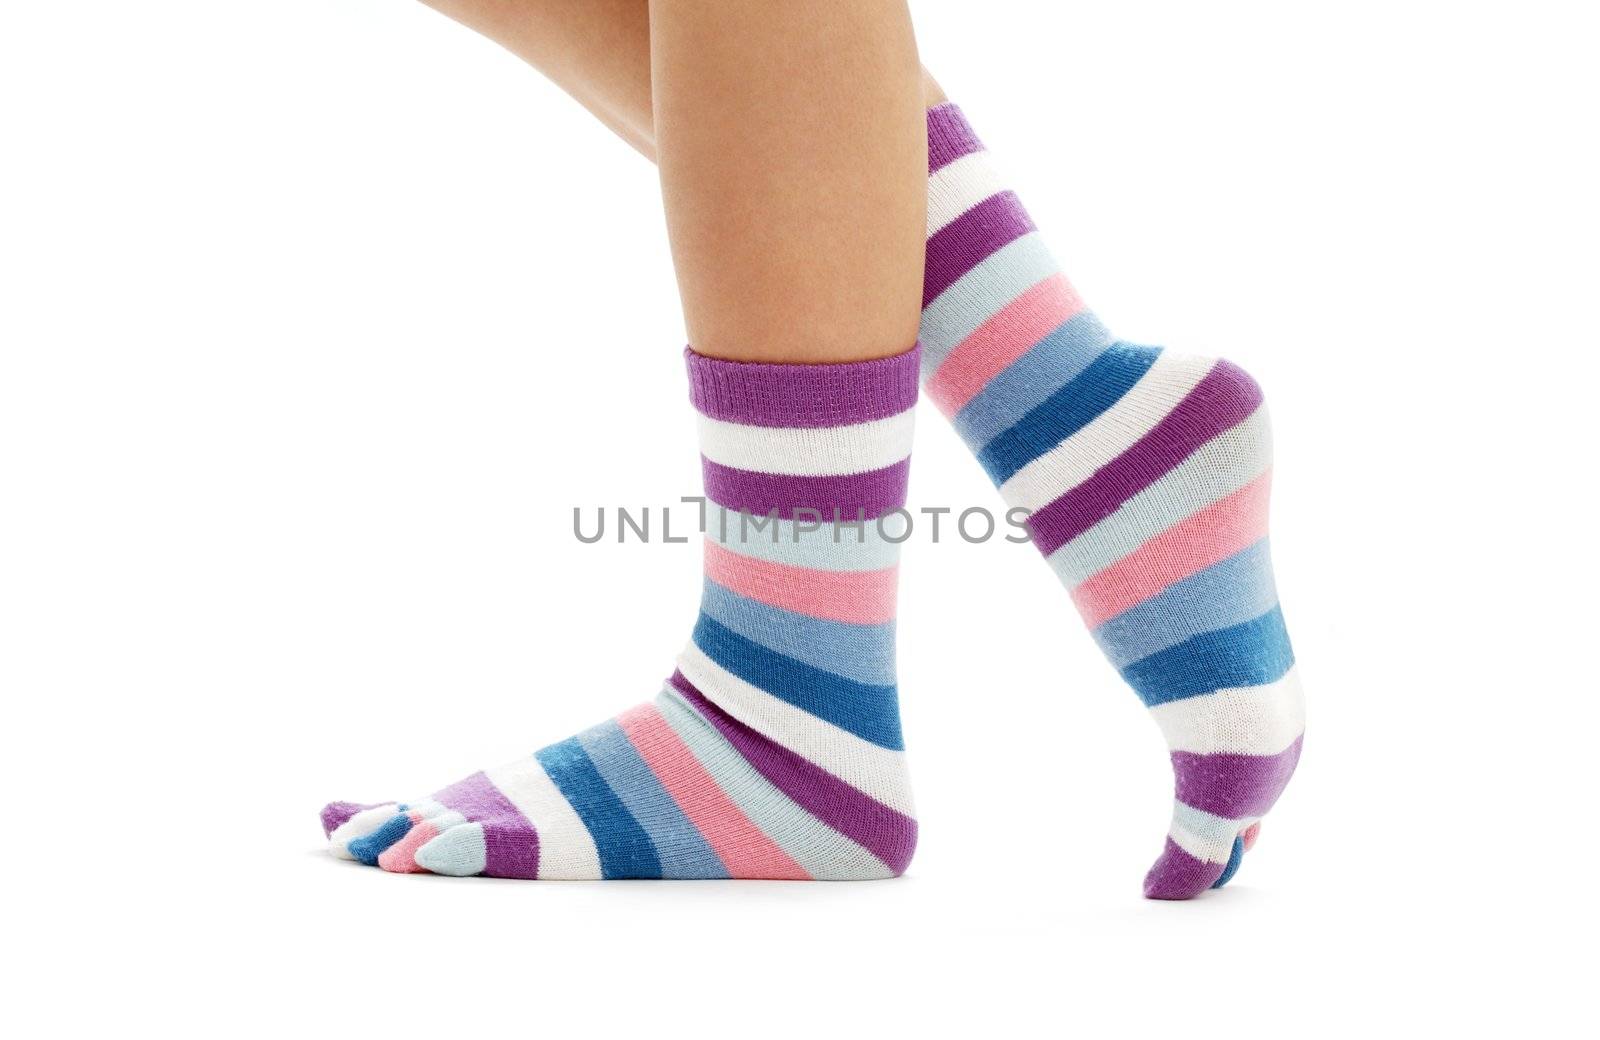 beautiful legs in funny socks by dolgachov